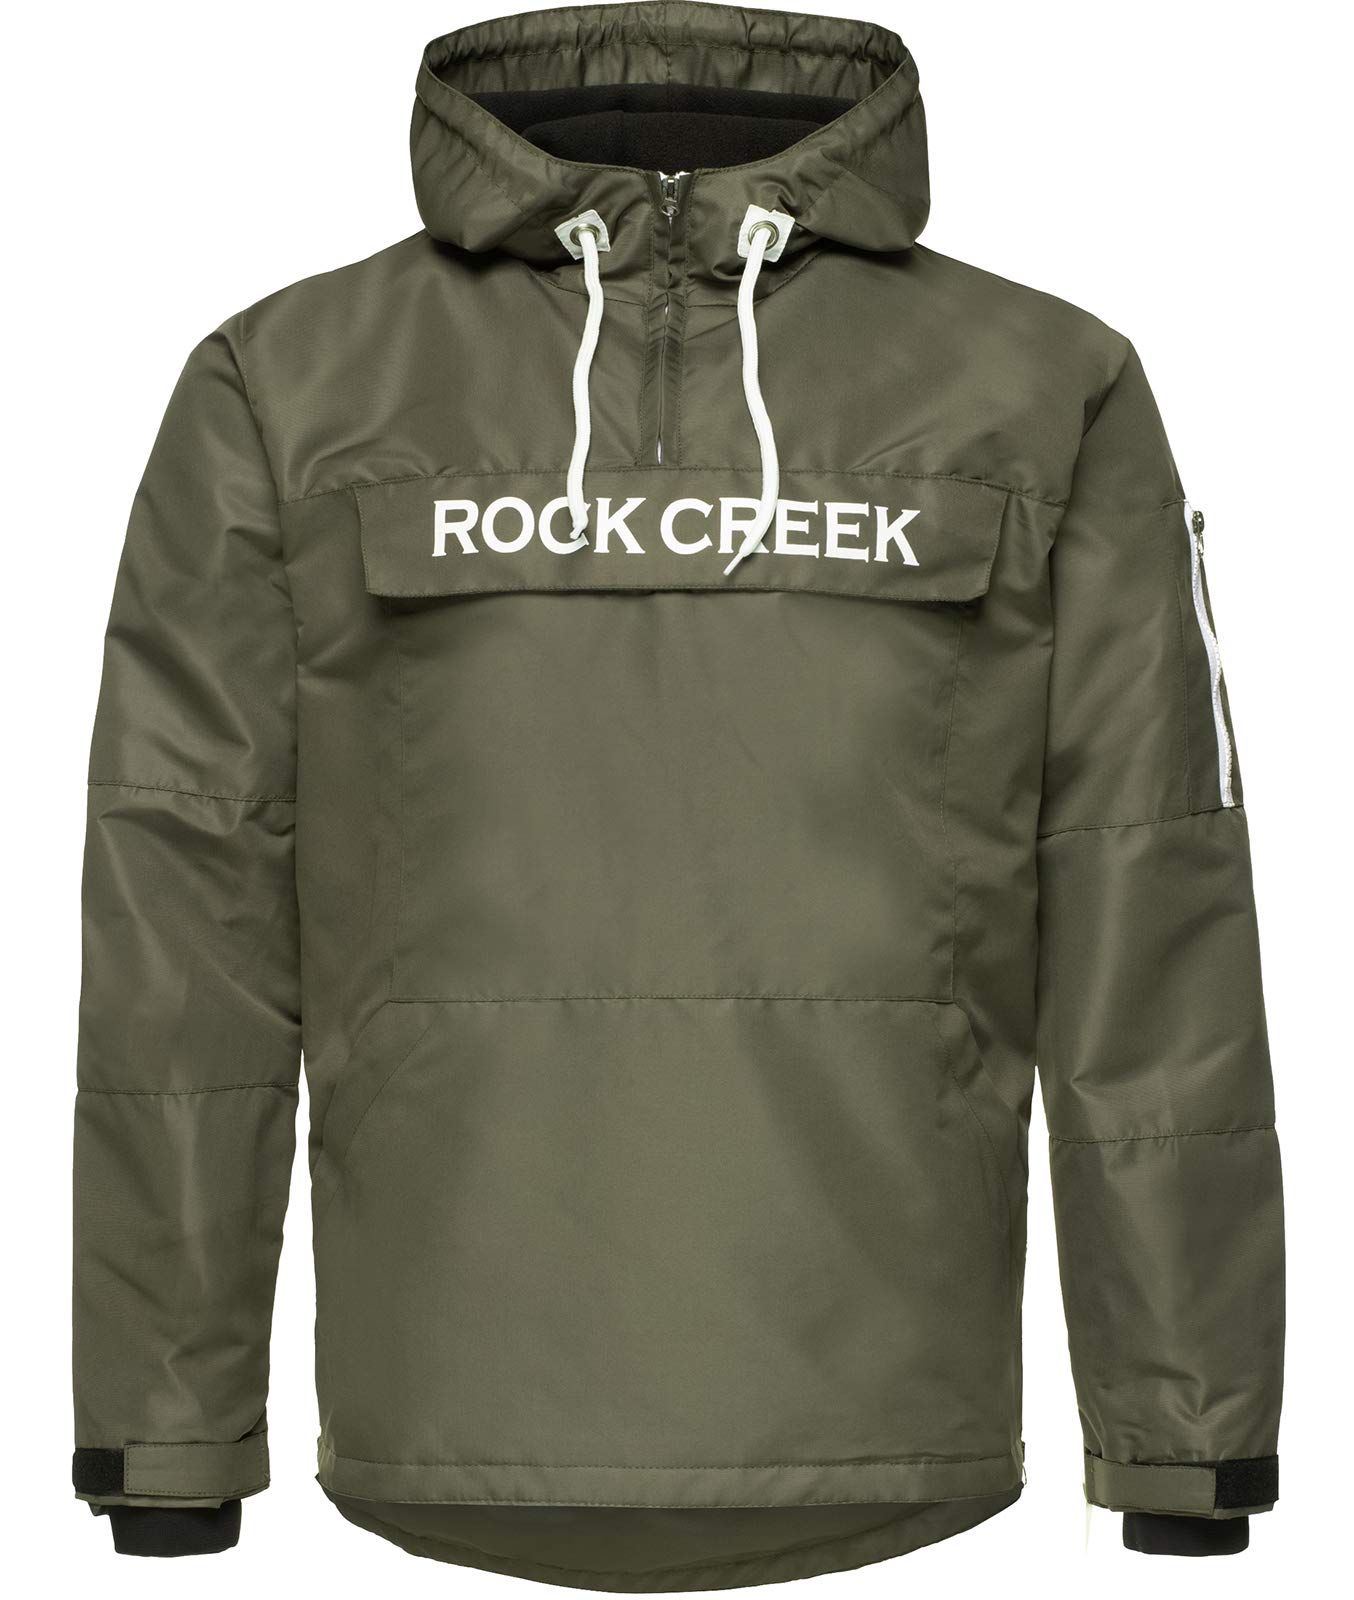 Rock Creek Herren Windbreaker Jacke Übergangsjacke Anorak Schlupfjacke Kapuze Regenjacke Winterjacke Herrenjacke Jacket H-167 Dunkelgrün 2XL